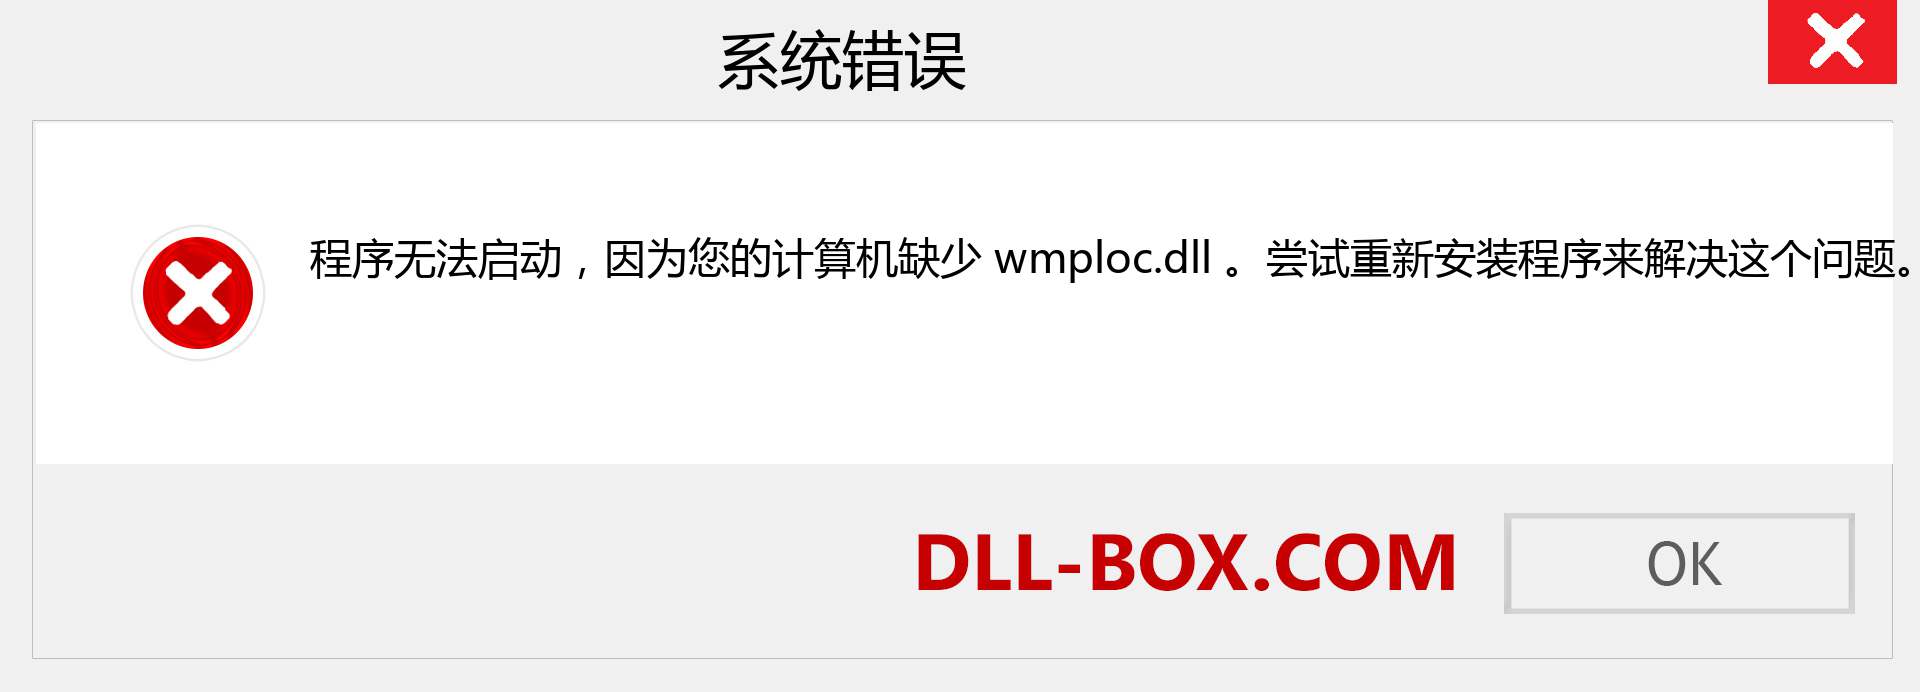 wmploc.dll 文件丢失？。 适用于 Windows 7、8、10 的下载 - 修复 Windows、照片、图像上的 wmploc dll 丢失错误